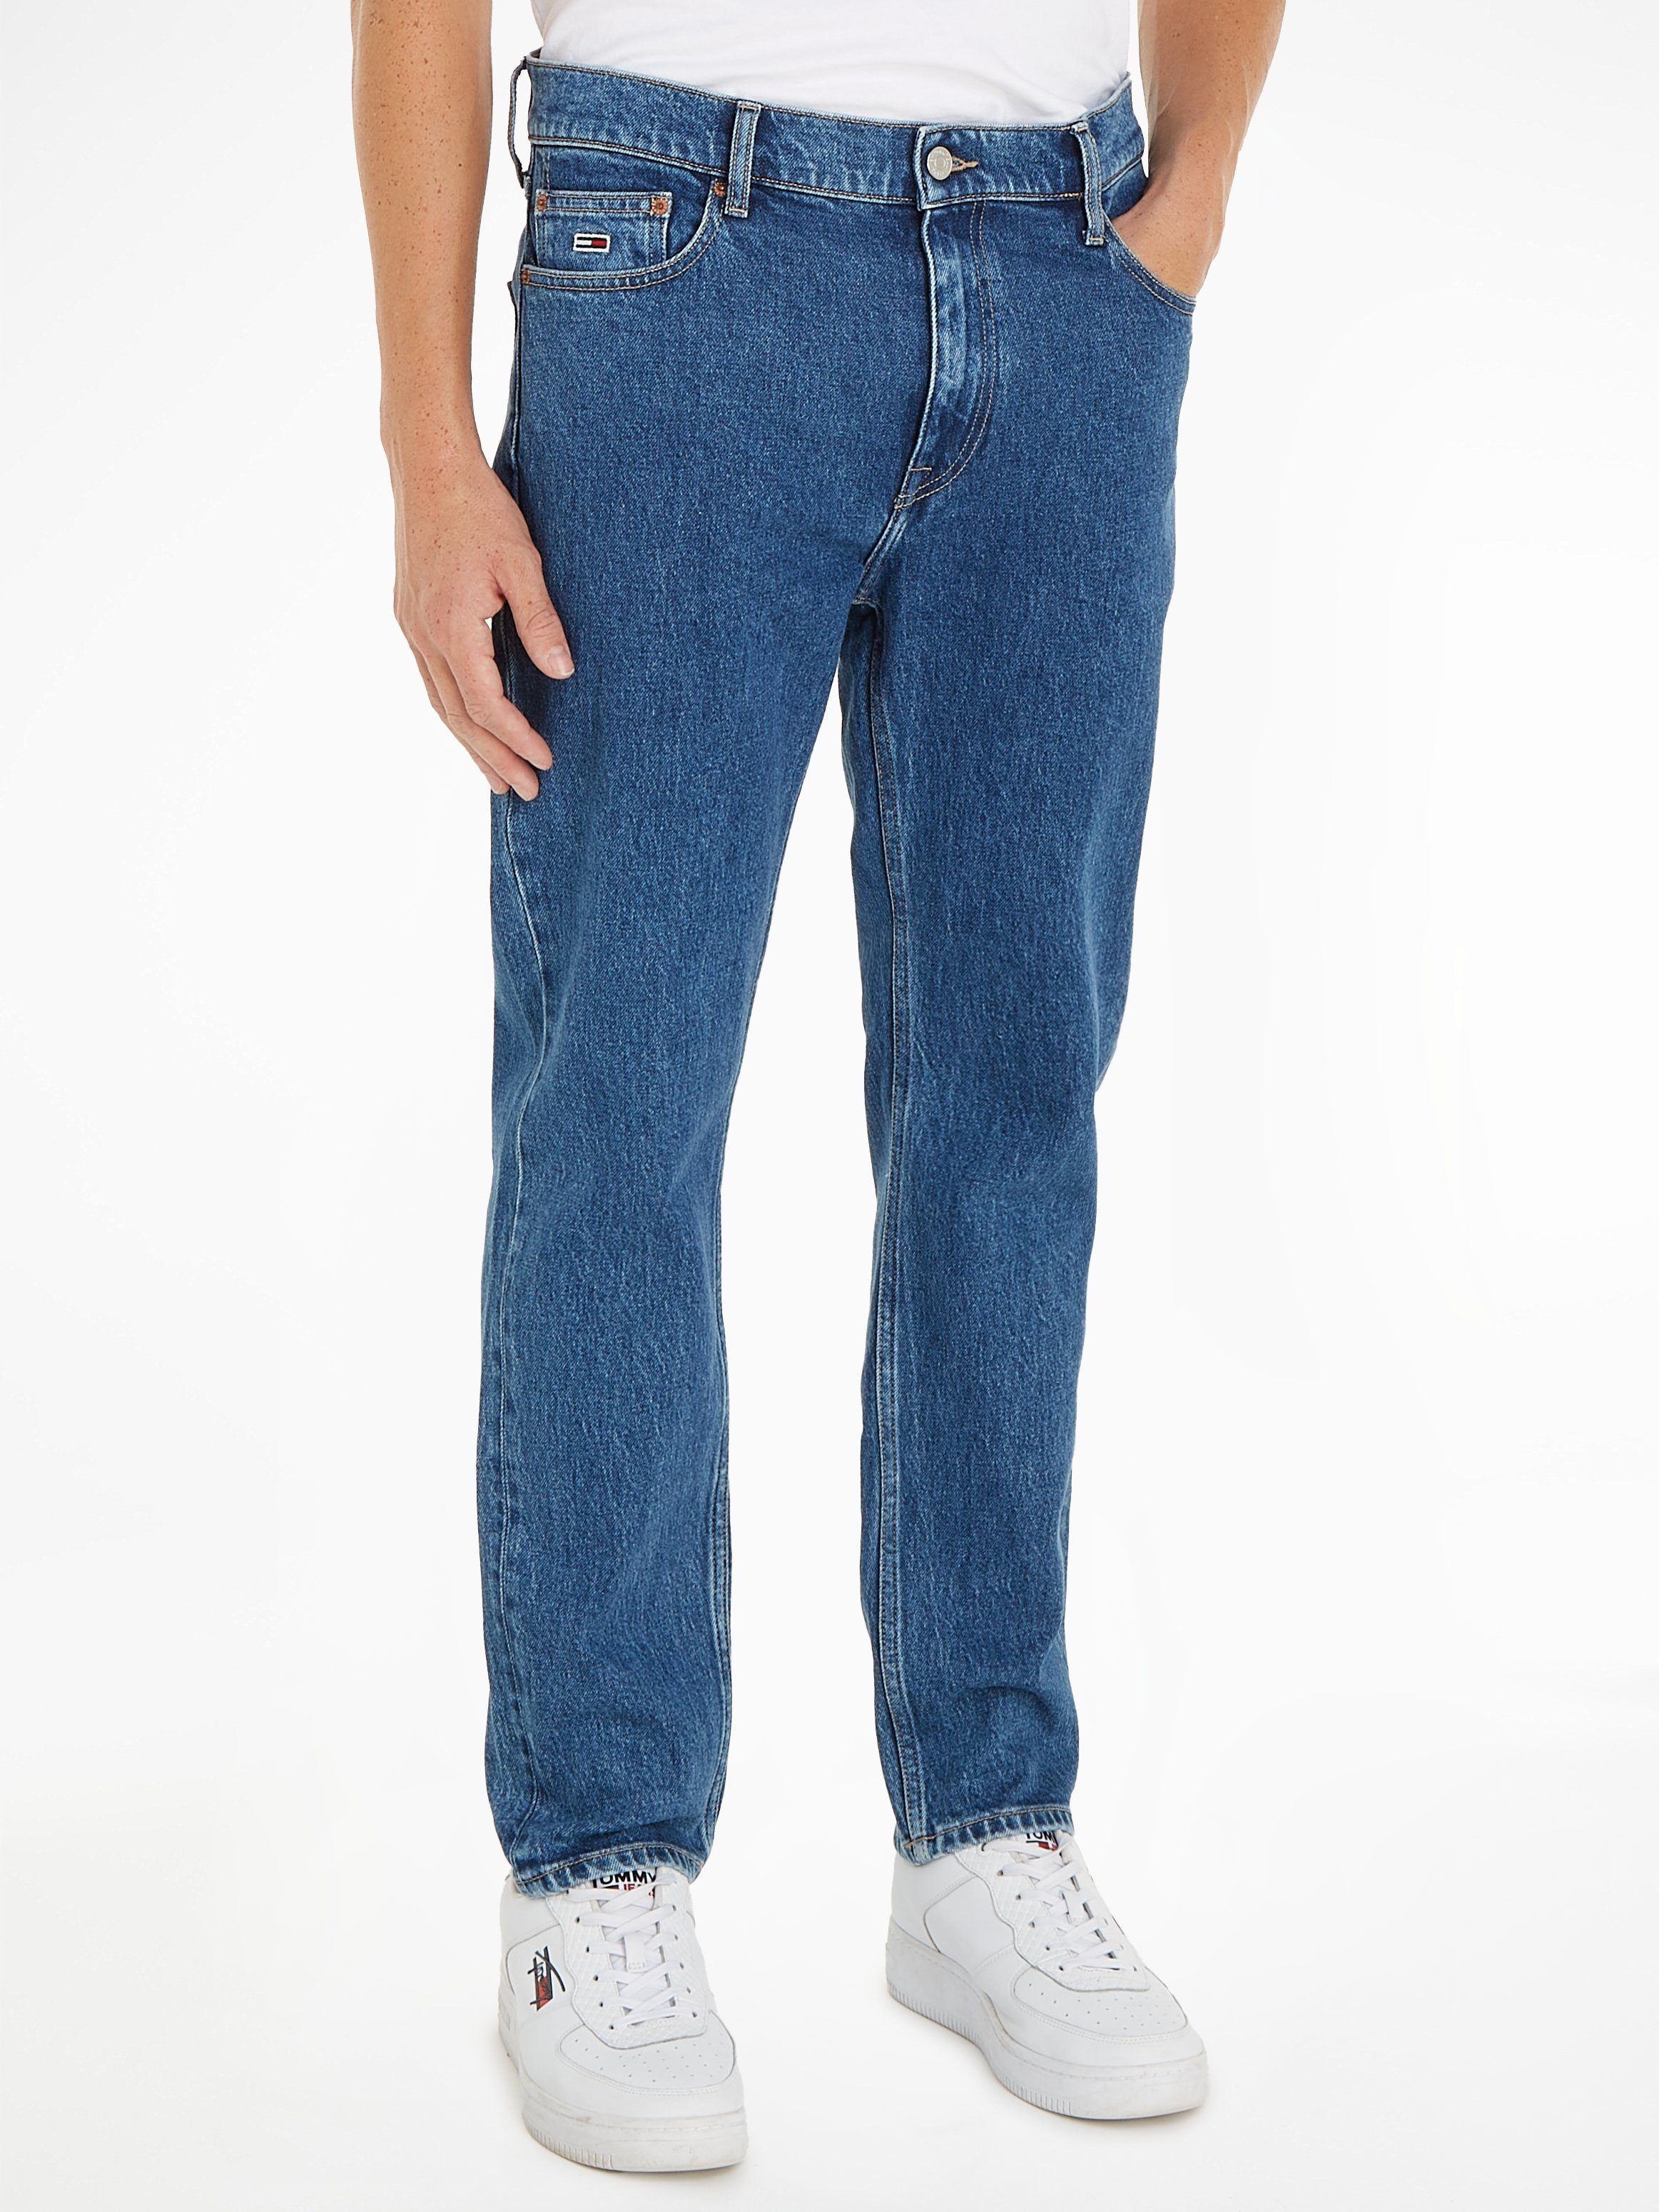 TOMMY JEANS Dad-jeans DAD JEAN RGLR in 5-pocketsstijl